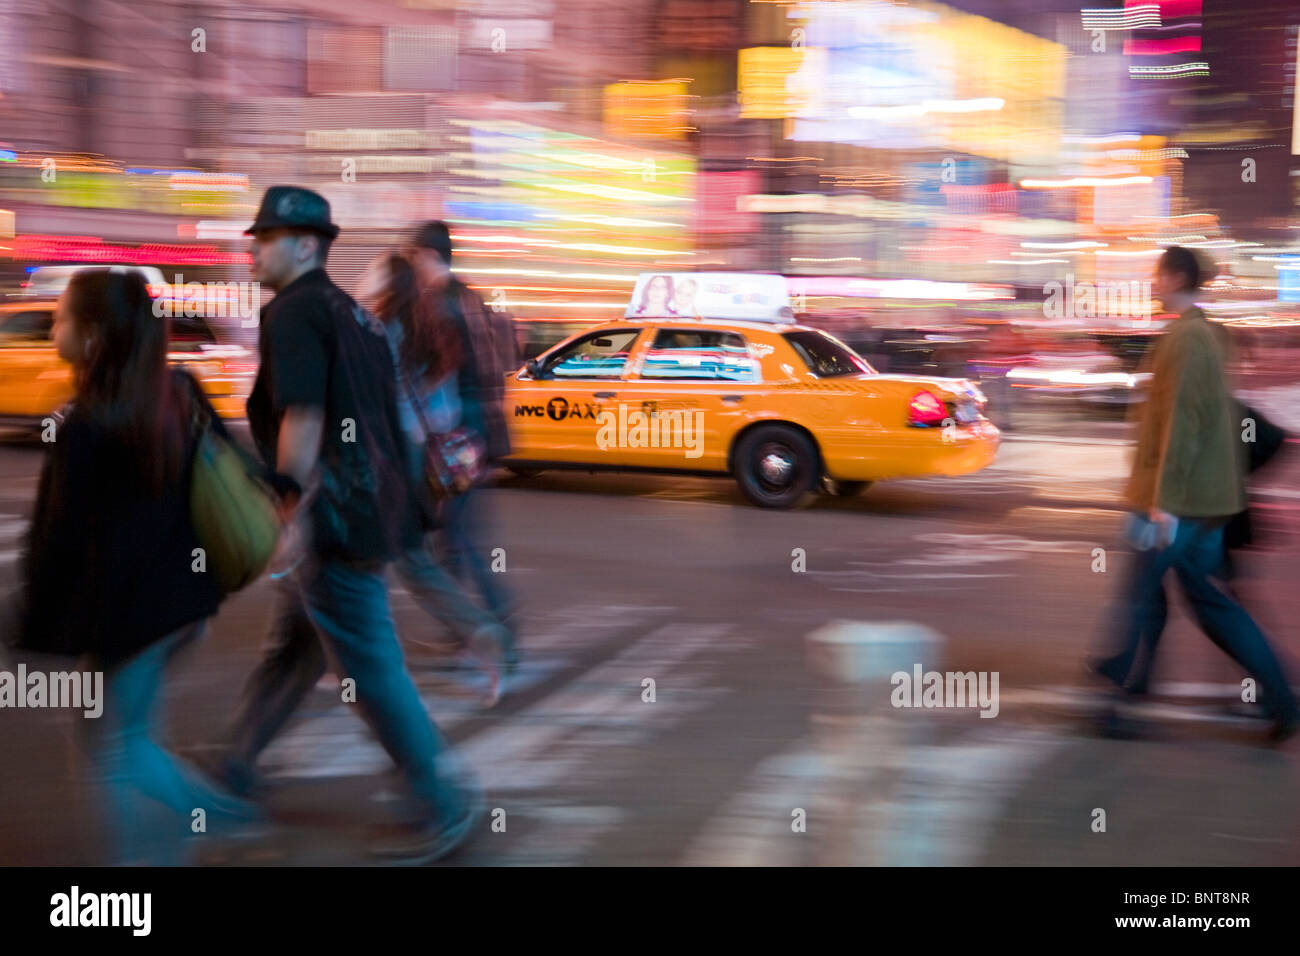 New York Yellow Cab, Manhattan, New York City, USA America Stock Photo